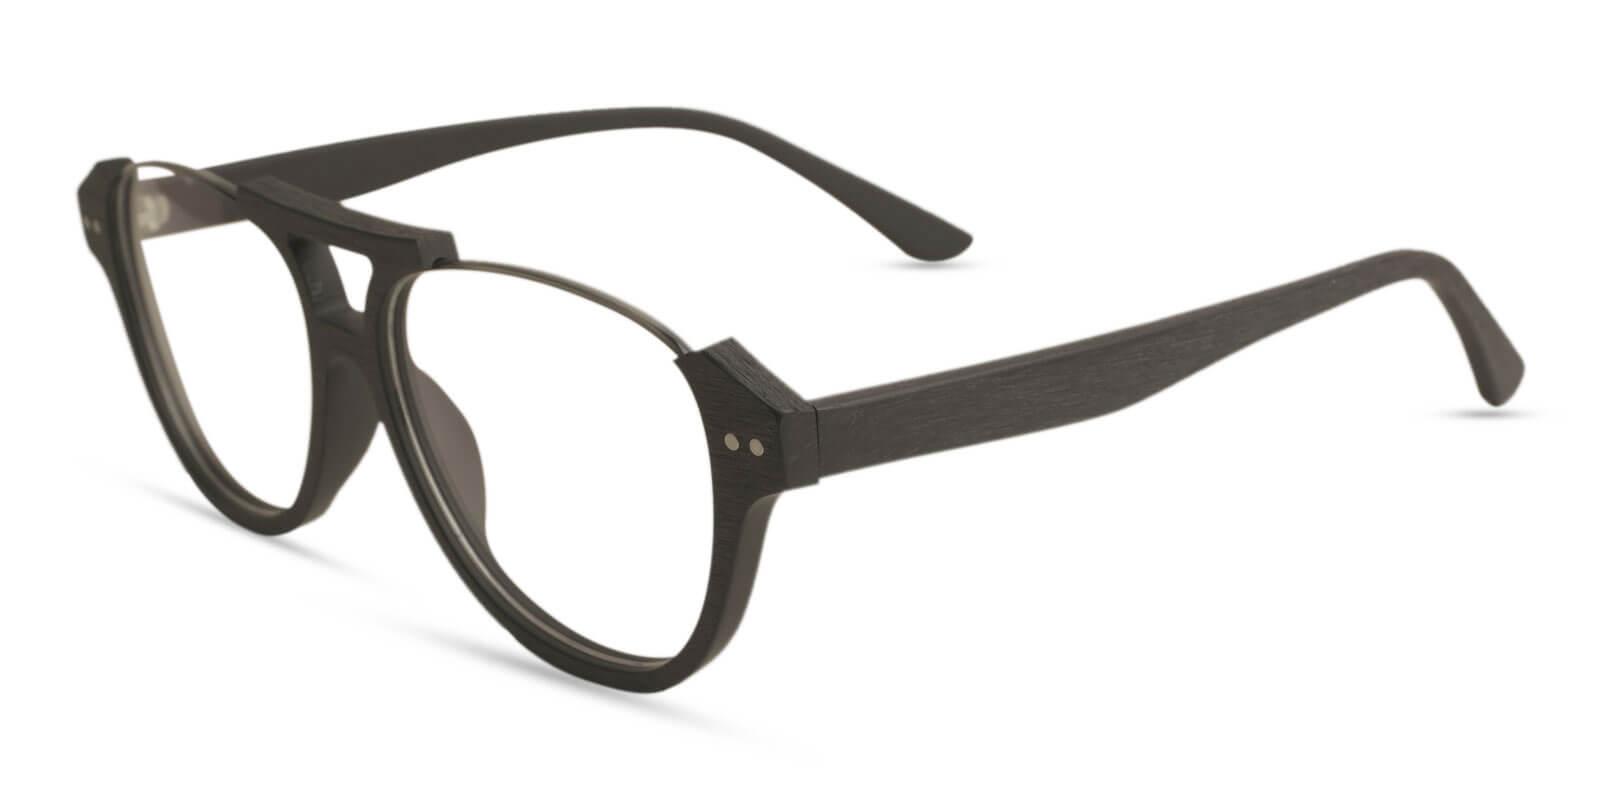 Ocean Gate Black Combination Eyeglasses , UniversalBridgeFit Frames from ABBE Glasses